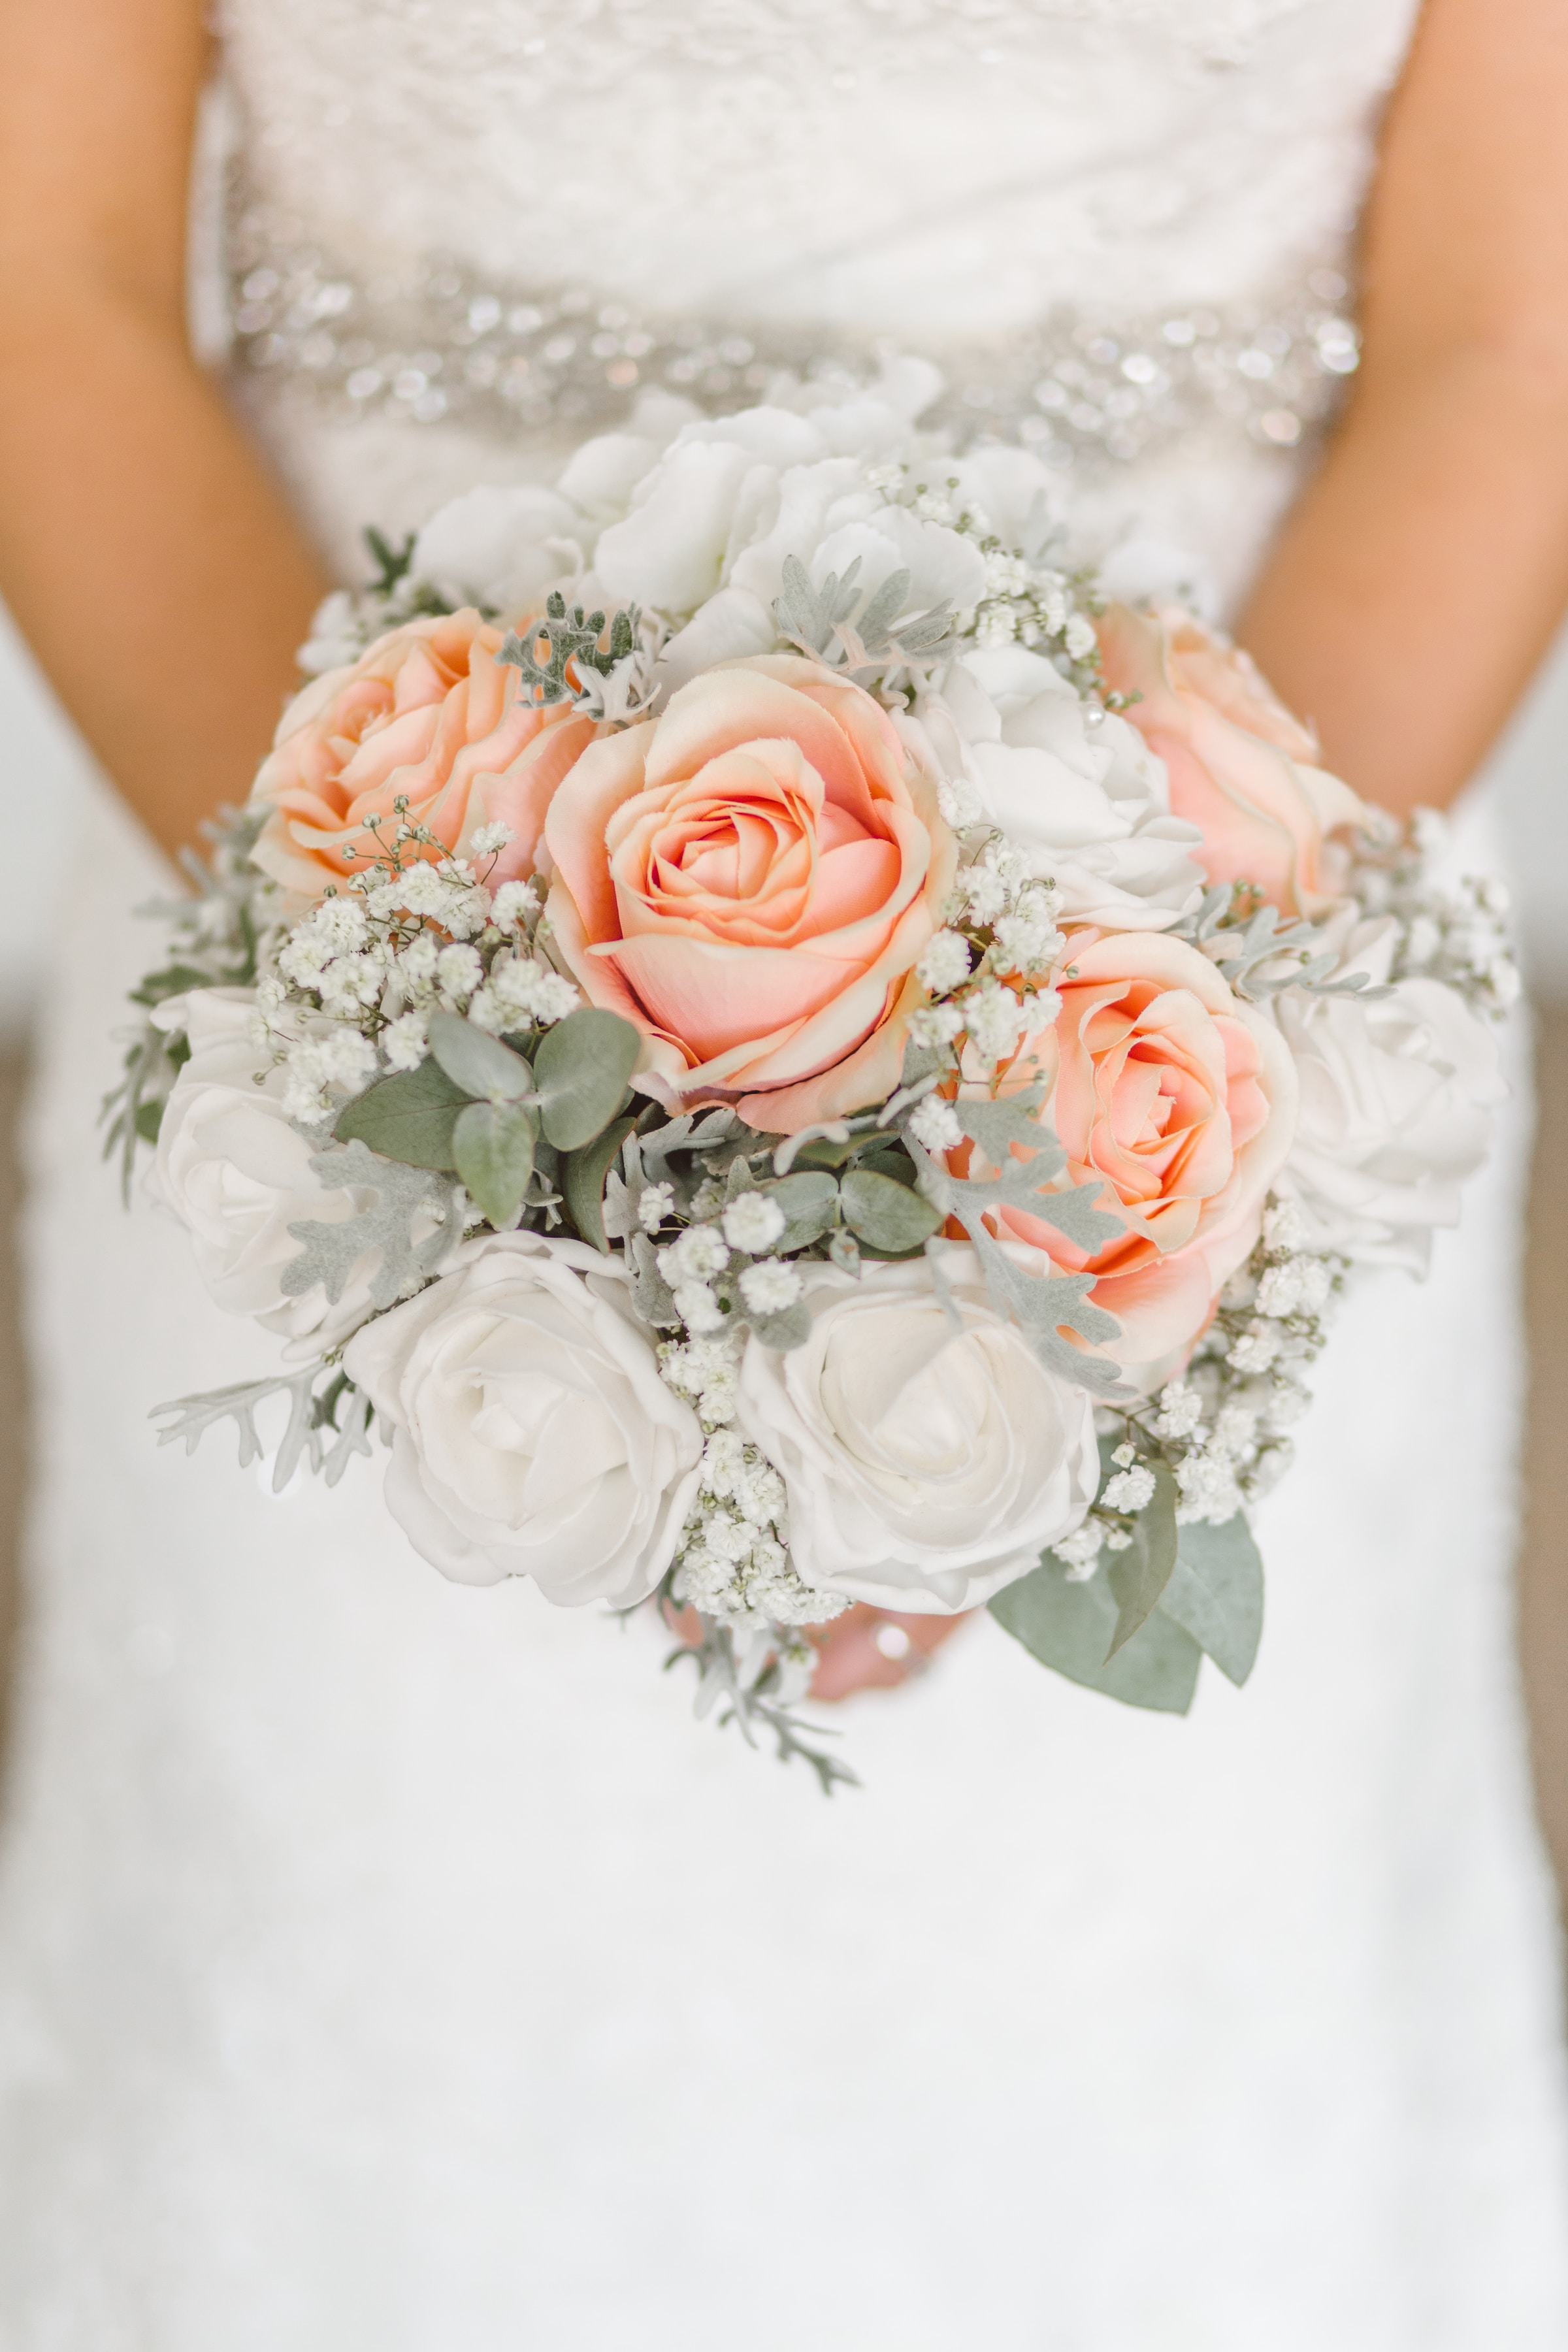 Une mariée tenant un bouquet | Source : Unsplash